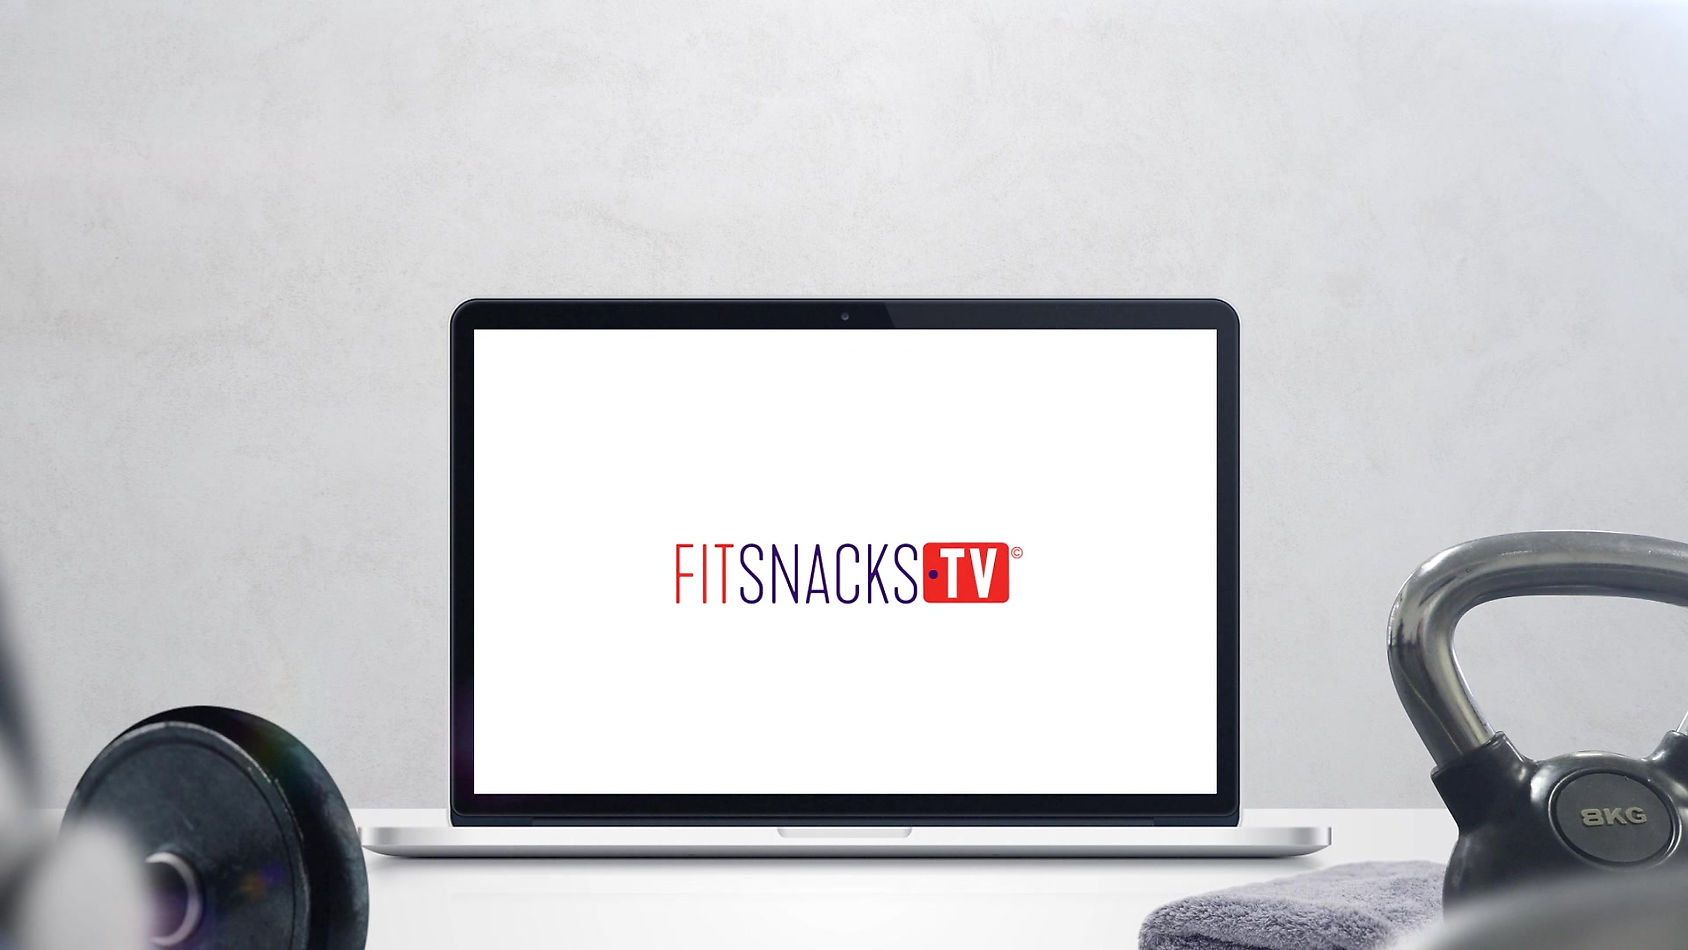 FitSnacksTV